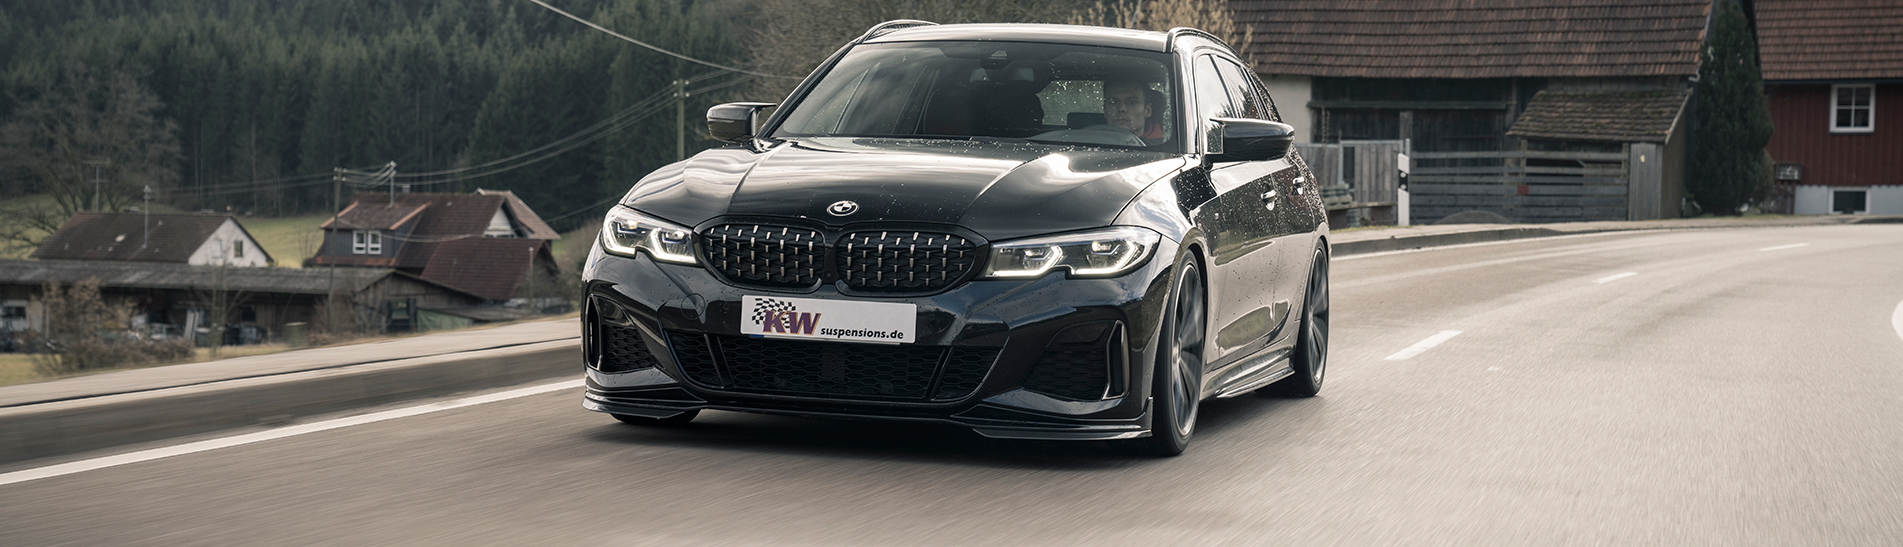 KW Tuning: BMW 3er Touring G21 mit Gewinde-Fahrwerk